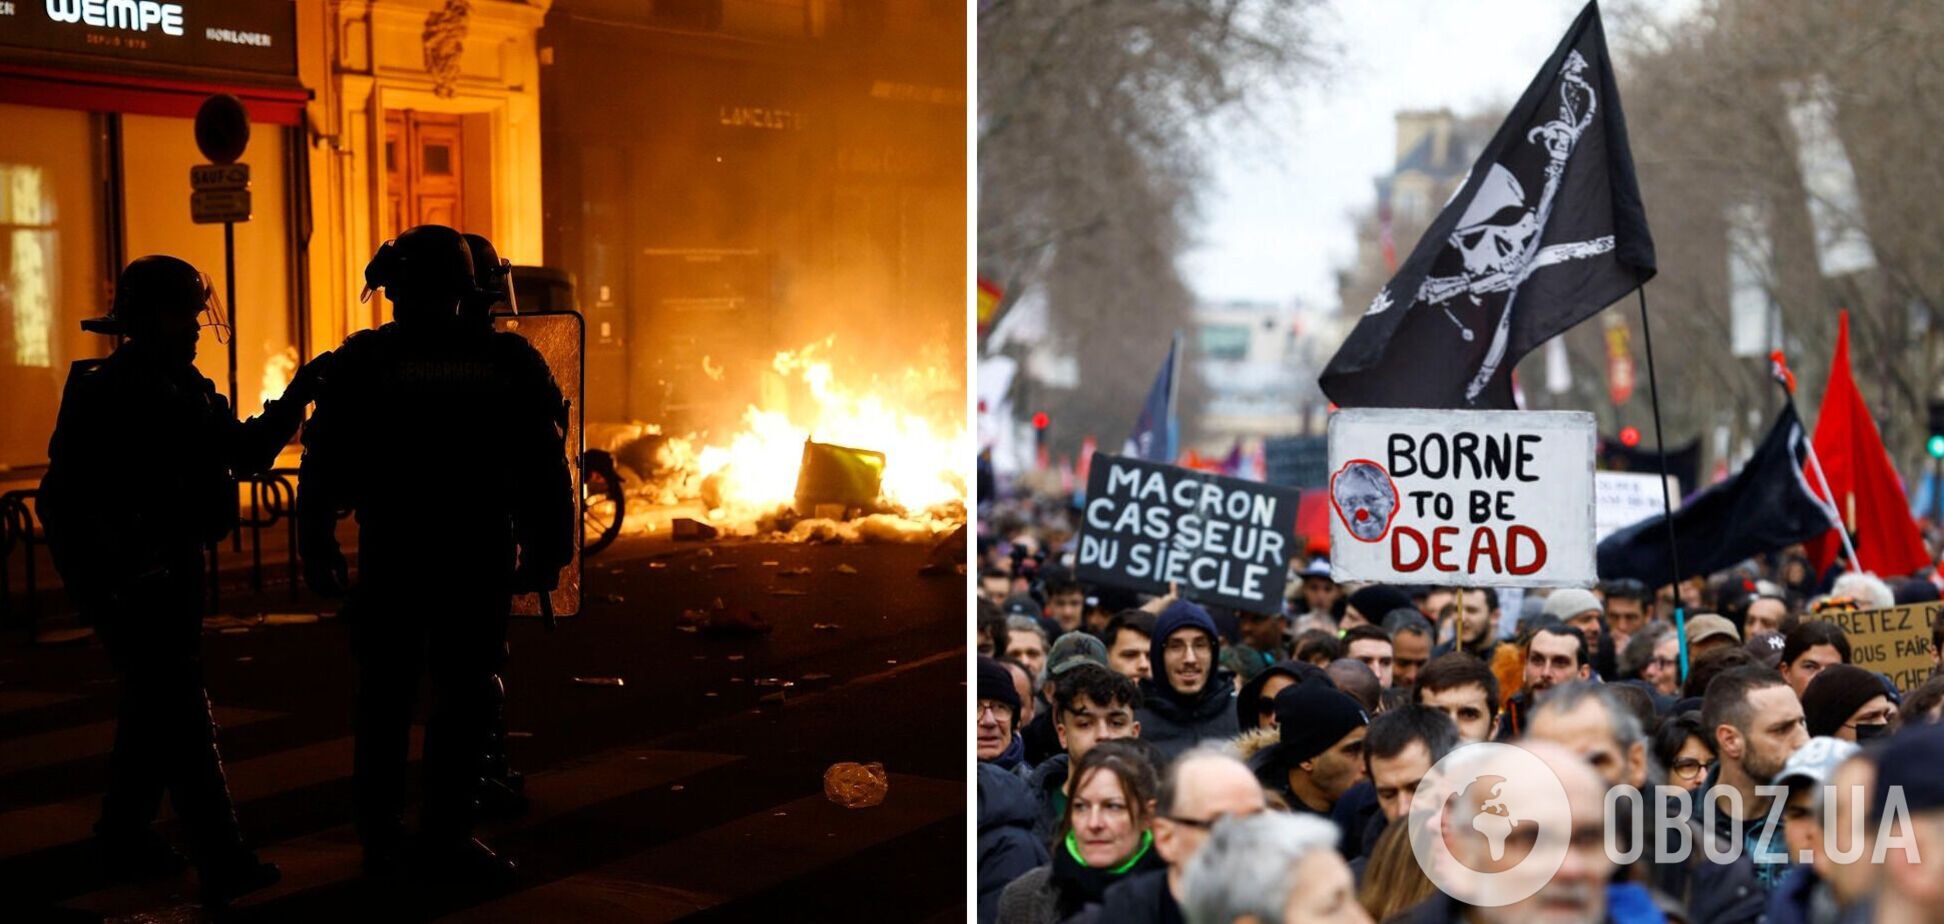 Парламент дважды пытался объявить вотум недоверия правительству Макрона: во Франции масштабные протесты из-за пенсионной реформы. Видео